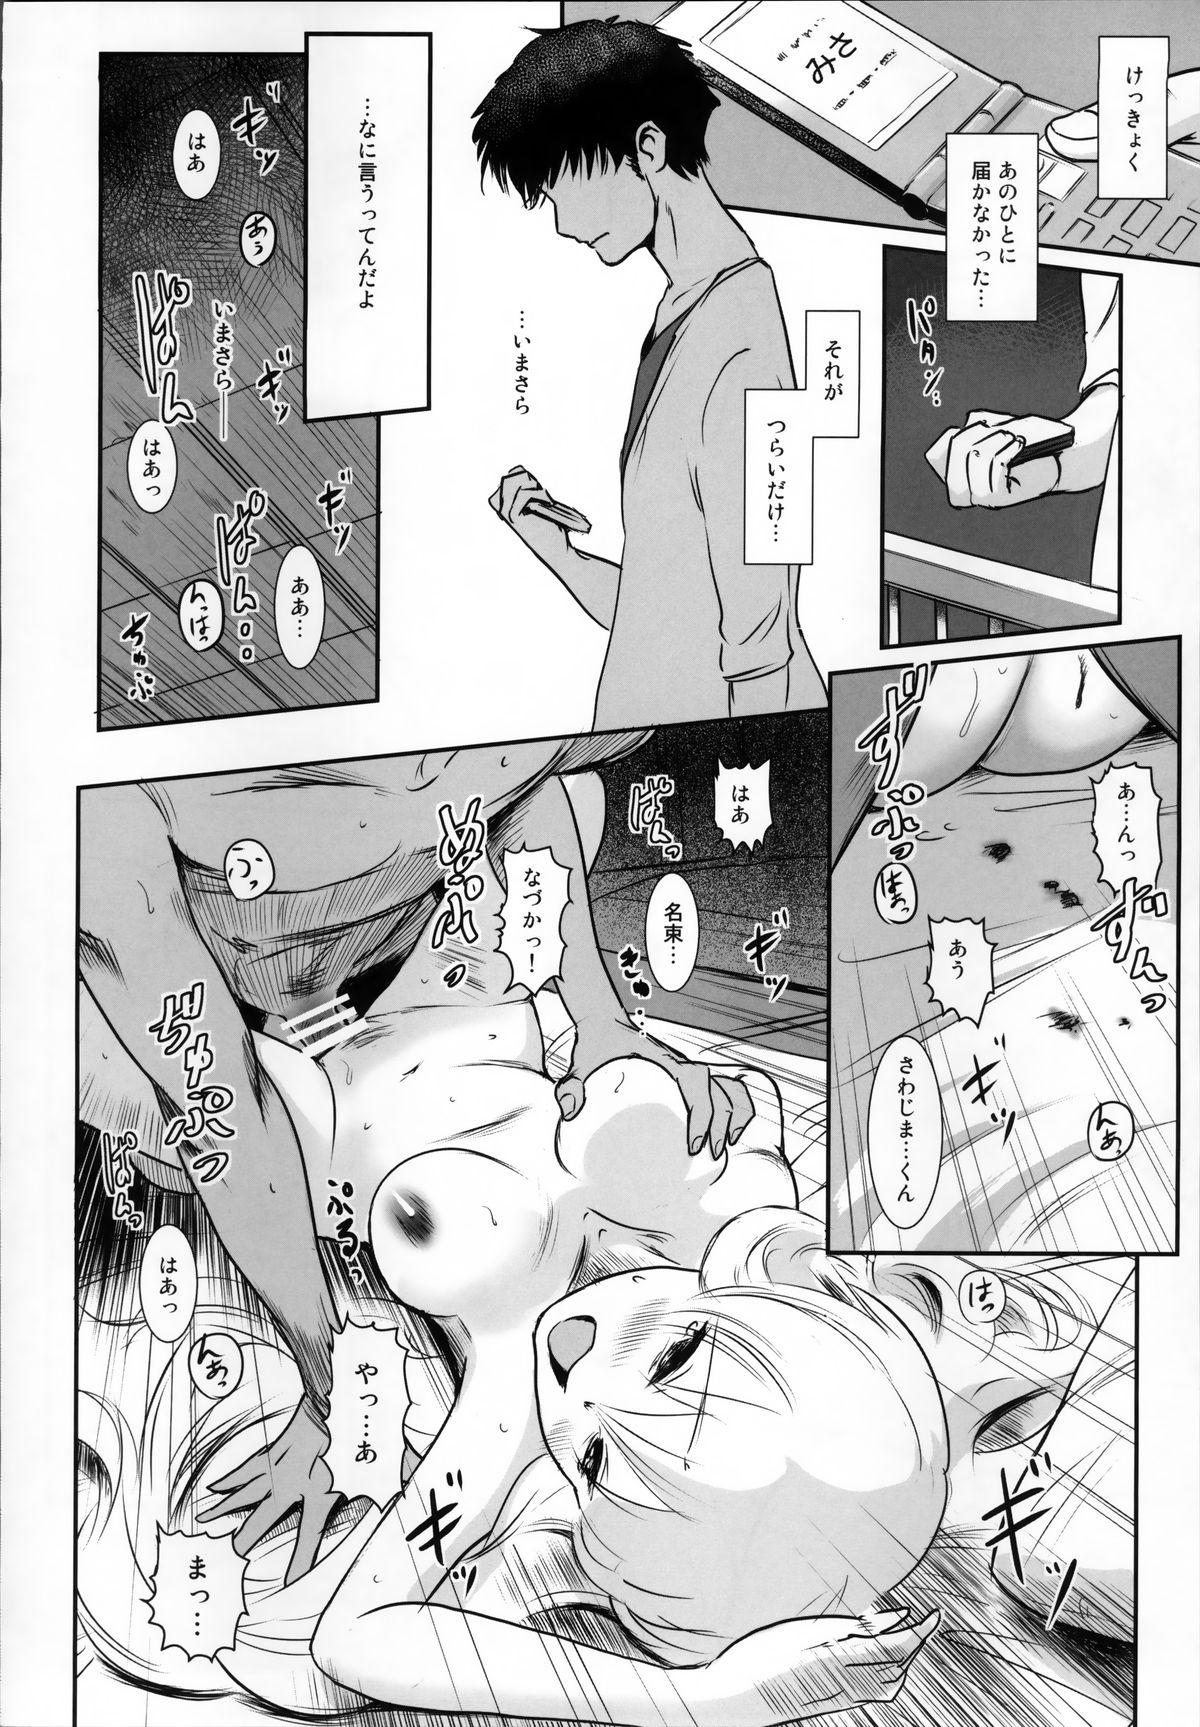 Story of the 'N' Situation - Situation#2 Kokoro Utsuri 27